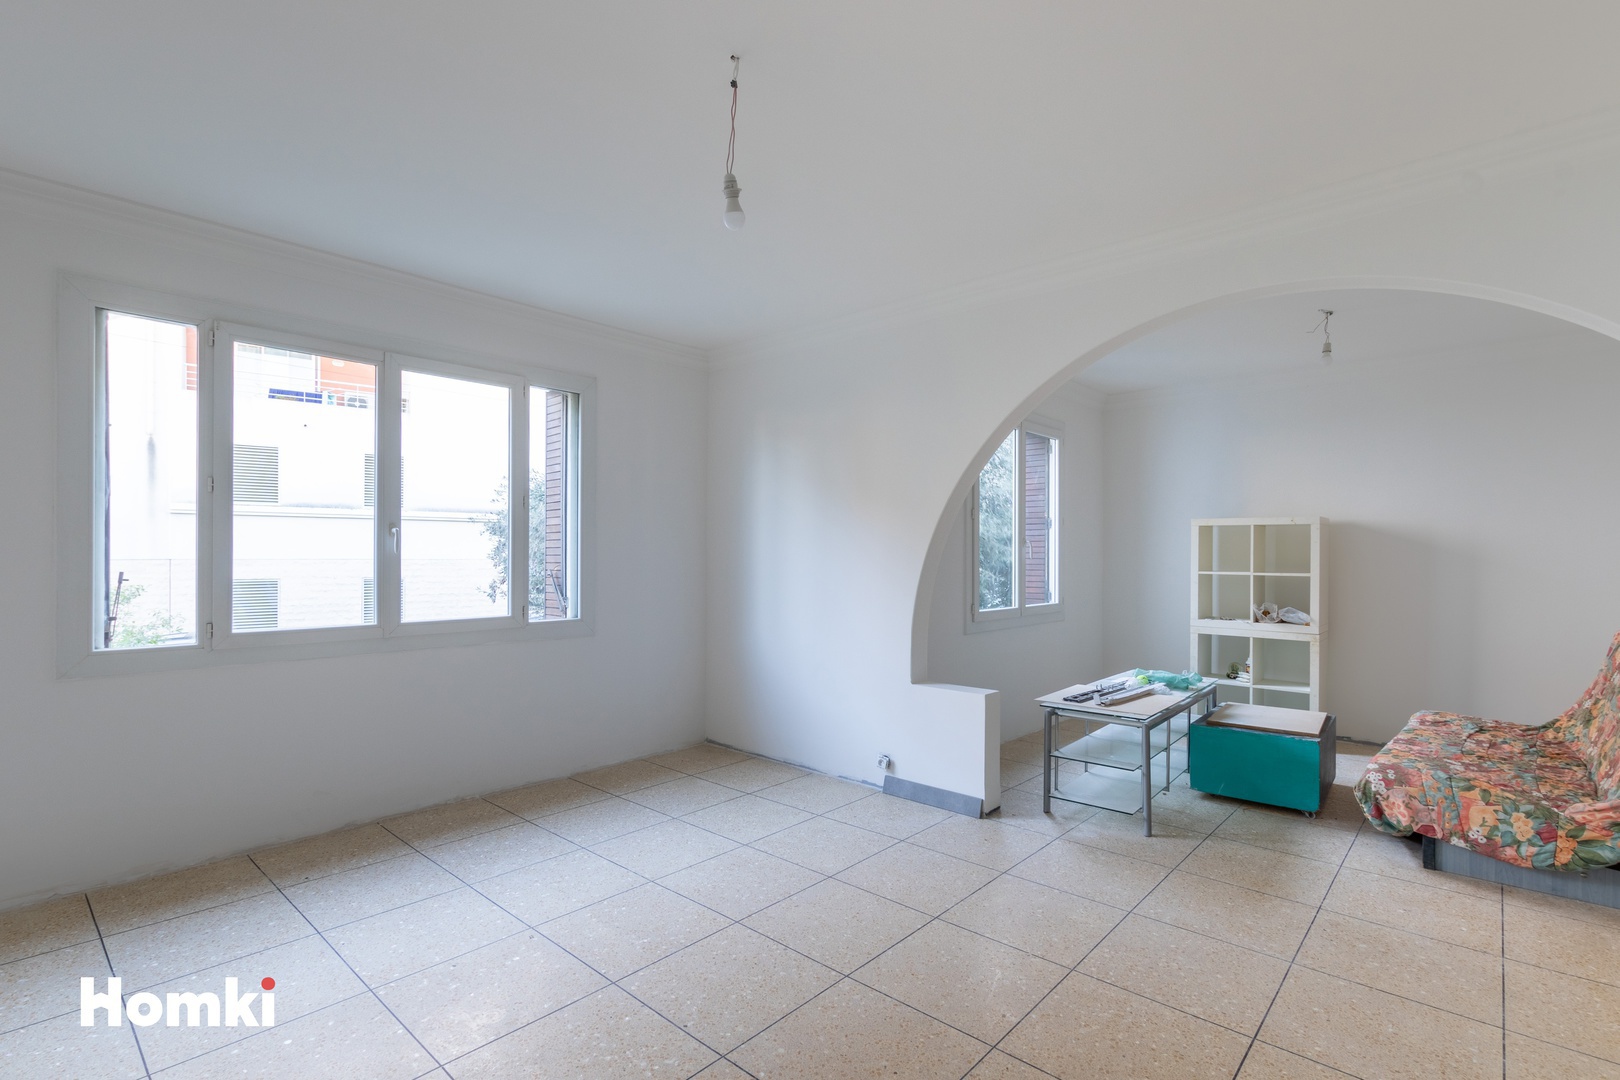 Homki - Vente Appartement  de 88.0 m² à La Seyne-sur-Mer 83500